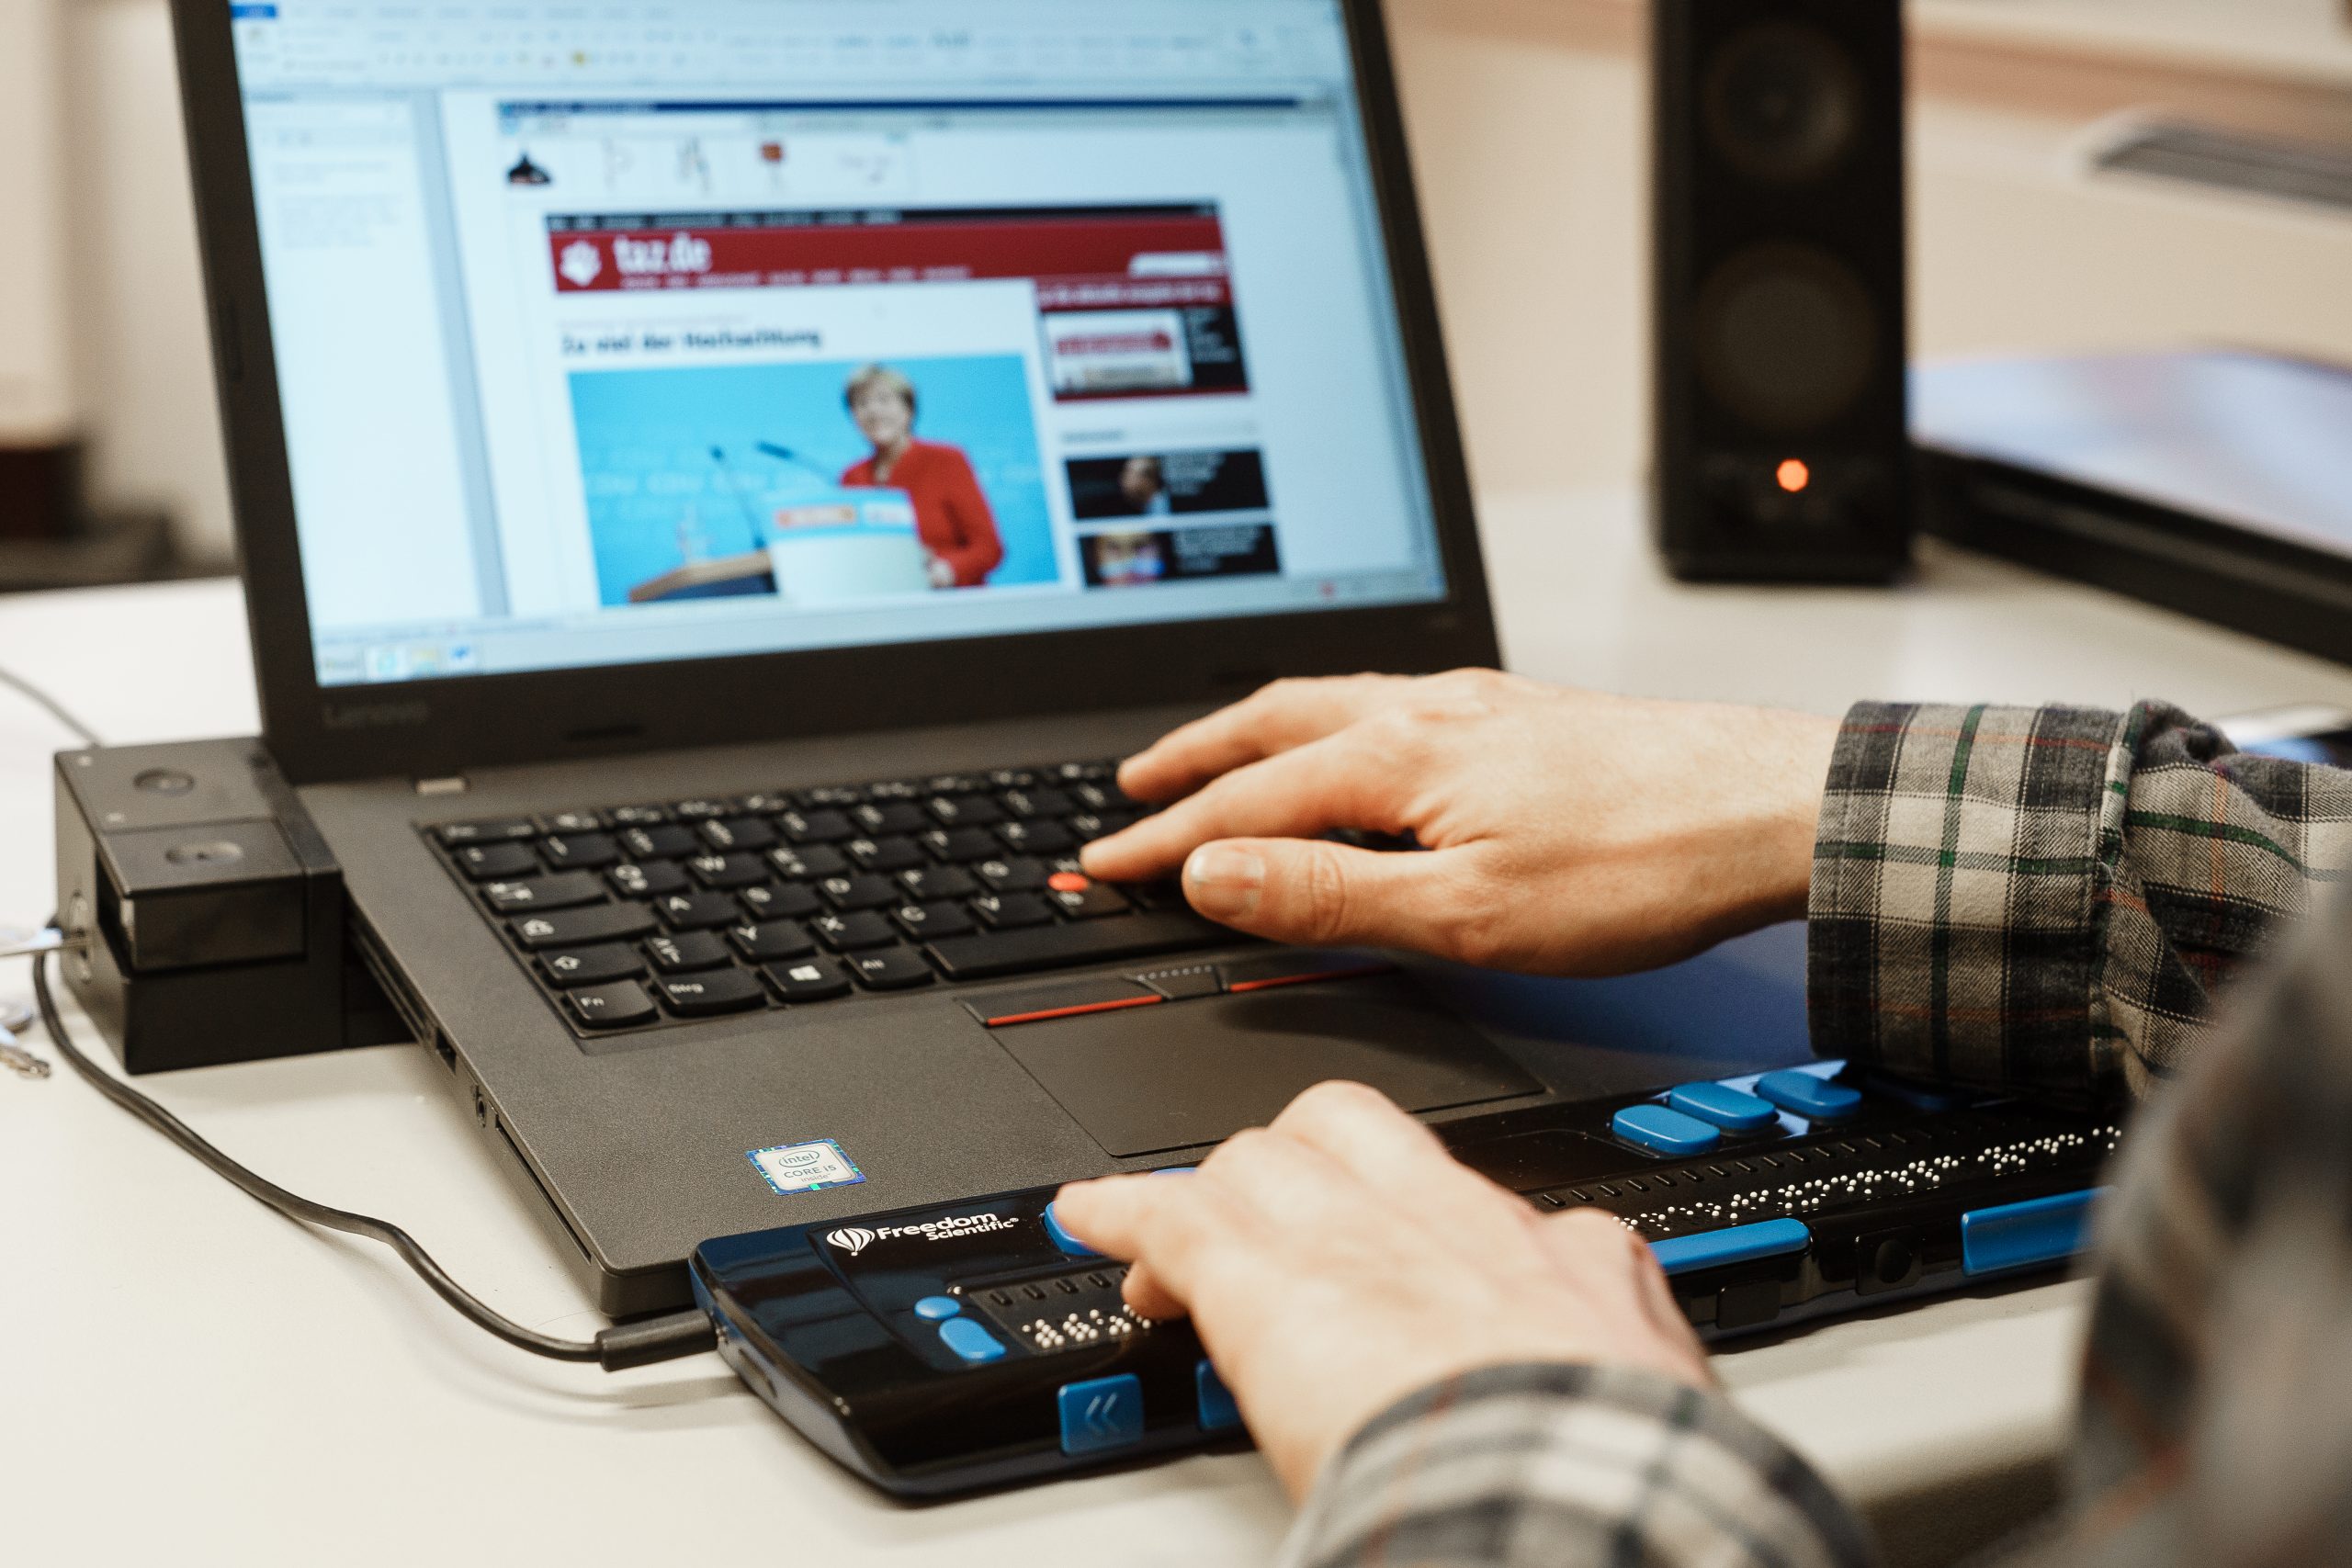 Zwei weiße Hände tippen auf die Tastaturen von einem Laptop. Aufgerufen ist eine Internetseite der taz mit einem Foto von Angela Merkel. Die Hände berühren sowohl, die Tastatur des Laptops, als auch eine zusätzlich angeschlossene Tastur für Menschen mit Sehbeeinträchtigung